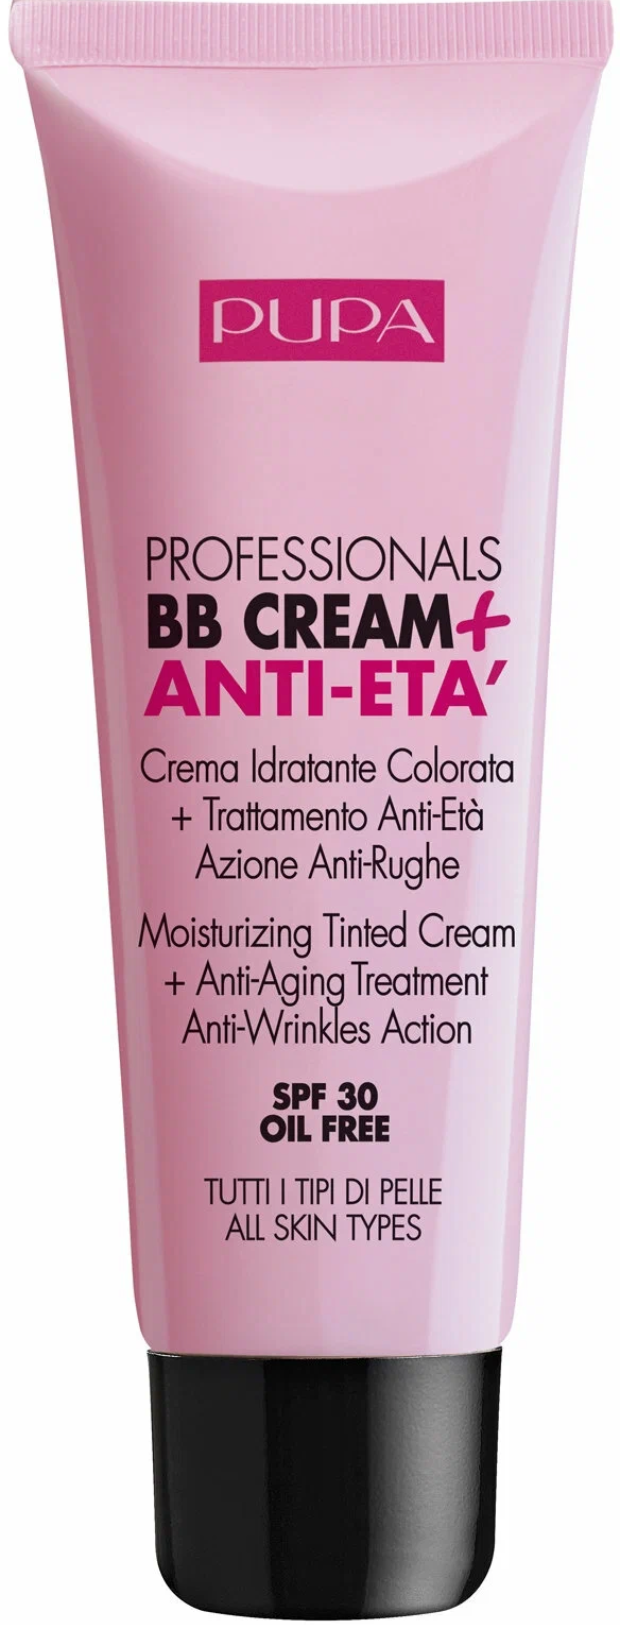 Пупа / Pupa - Тональный крем для лица BB Cream+Anti-Eta антивозрастной увлажняющий 002 Sand 50 мл